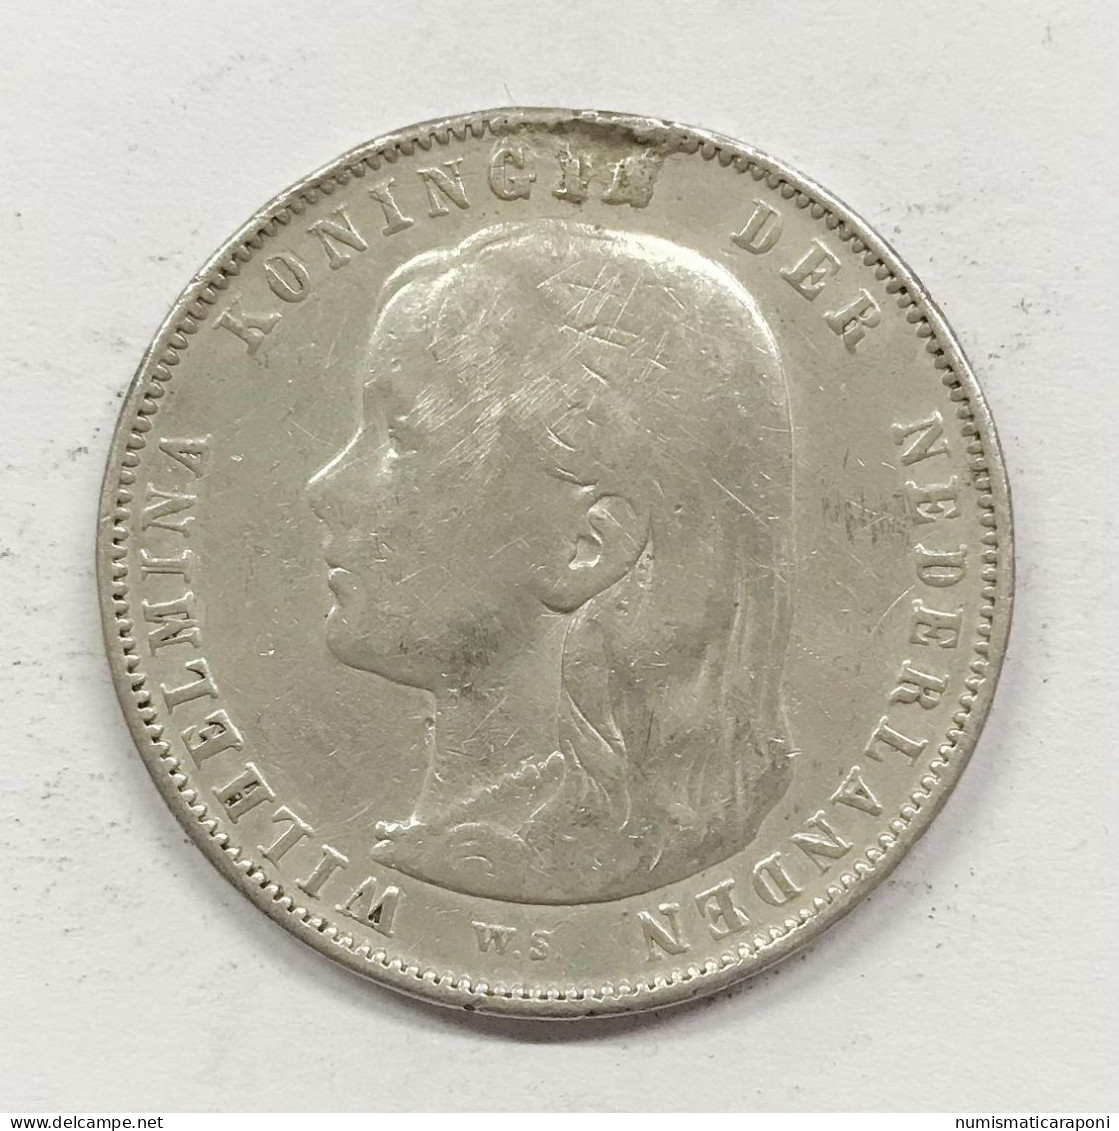 NETHERLAND OLANDA WILHELMINA  GULDEN 1892  E.1078 - 1 Gulden